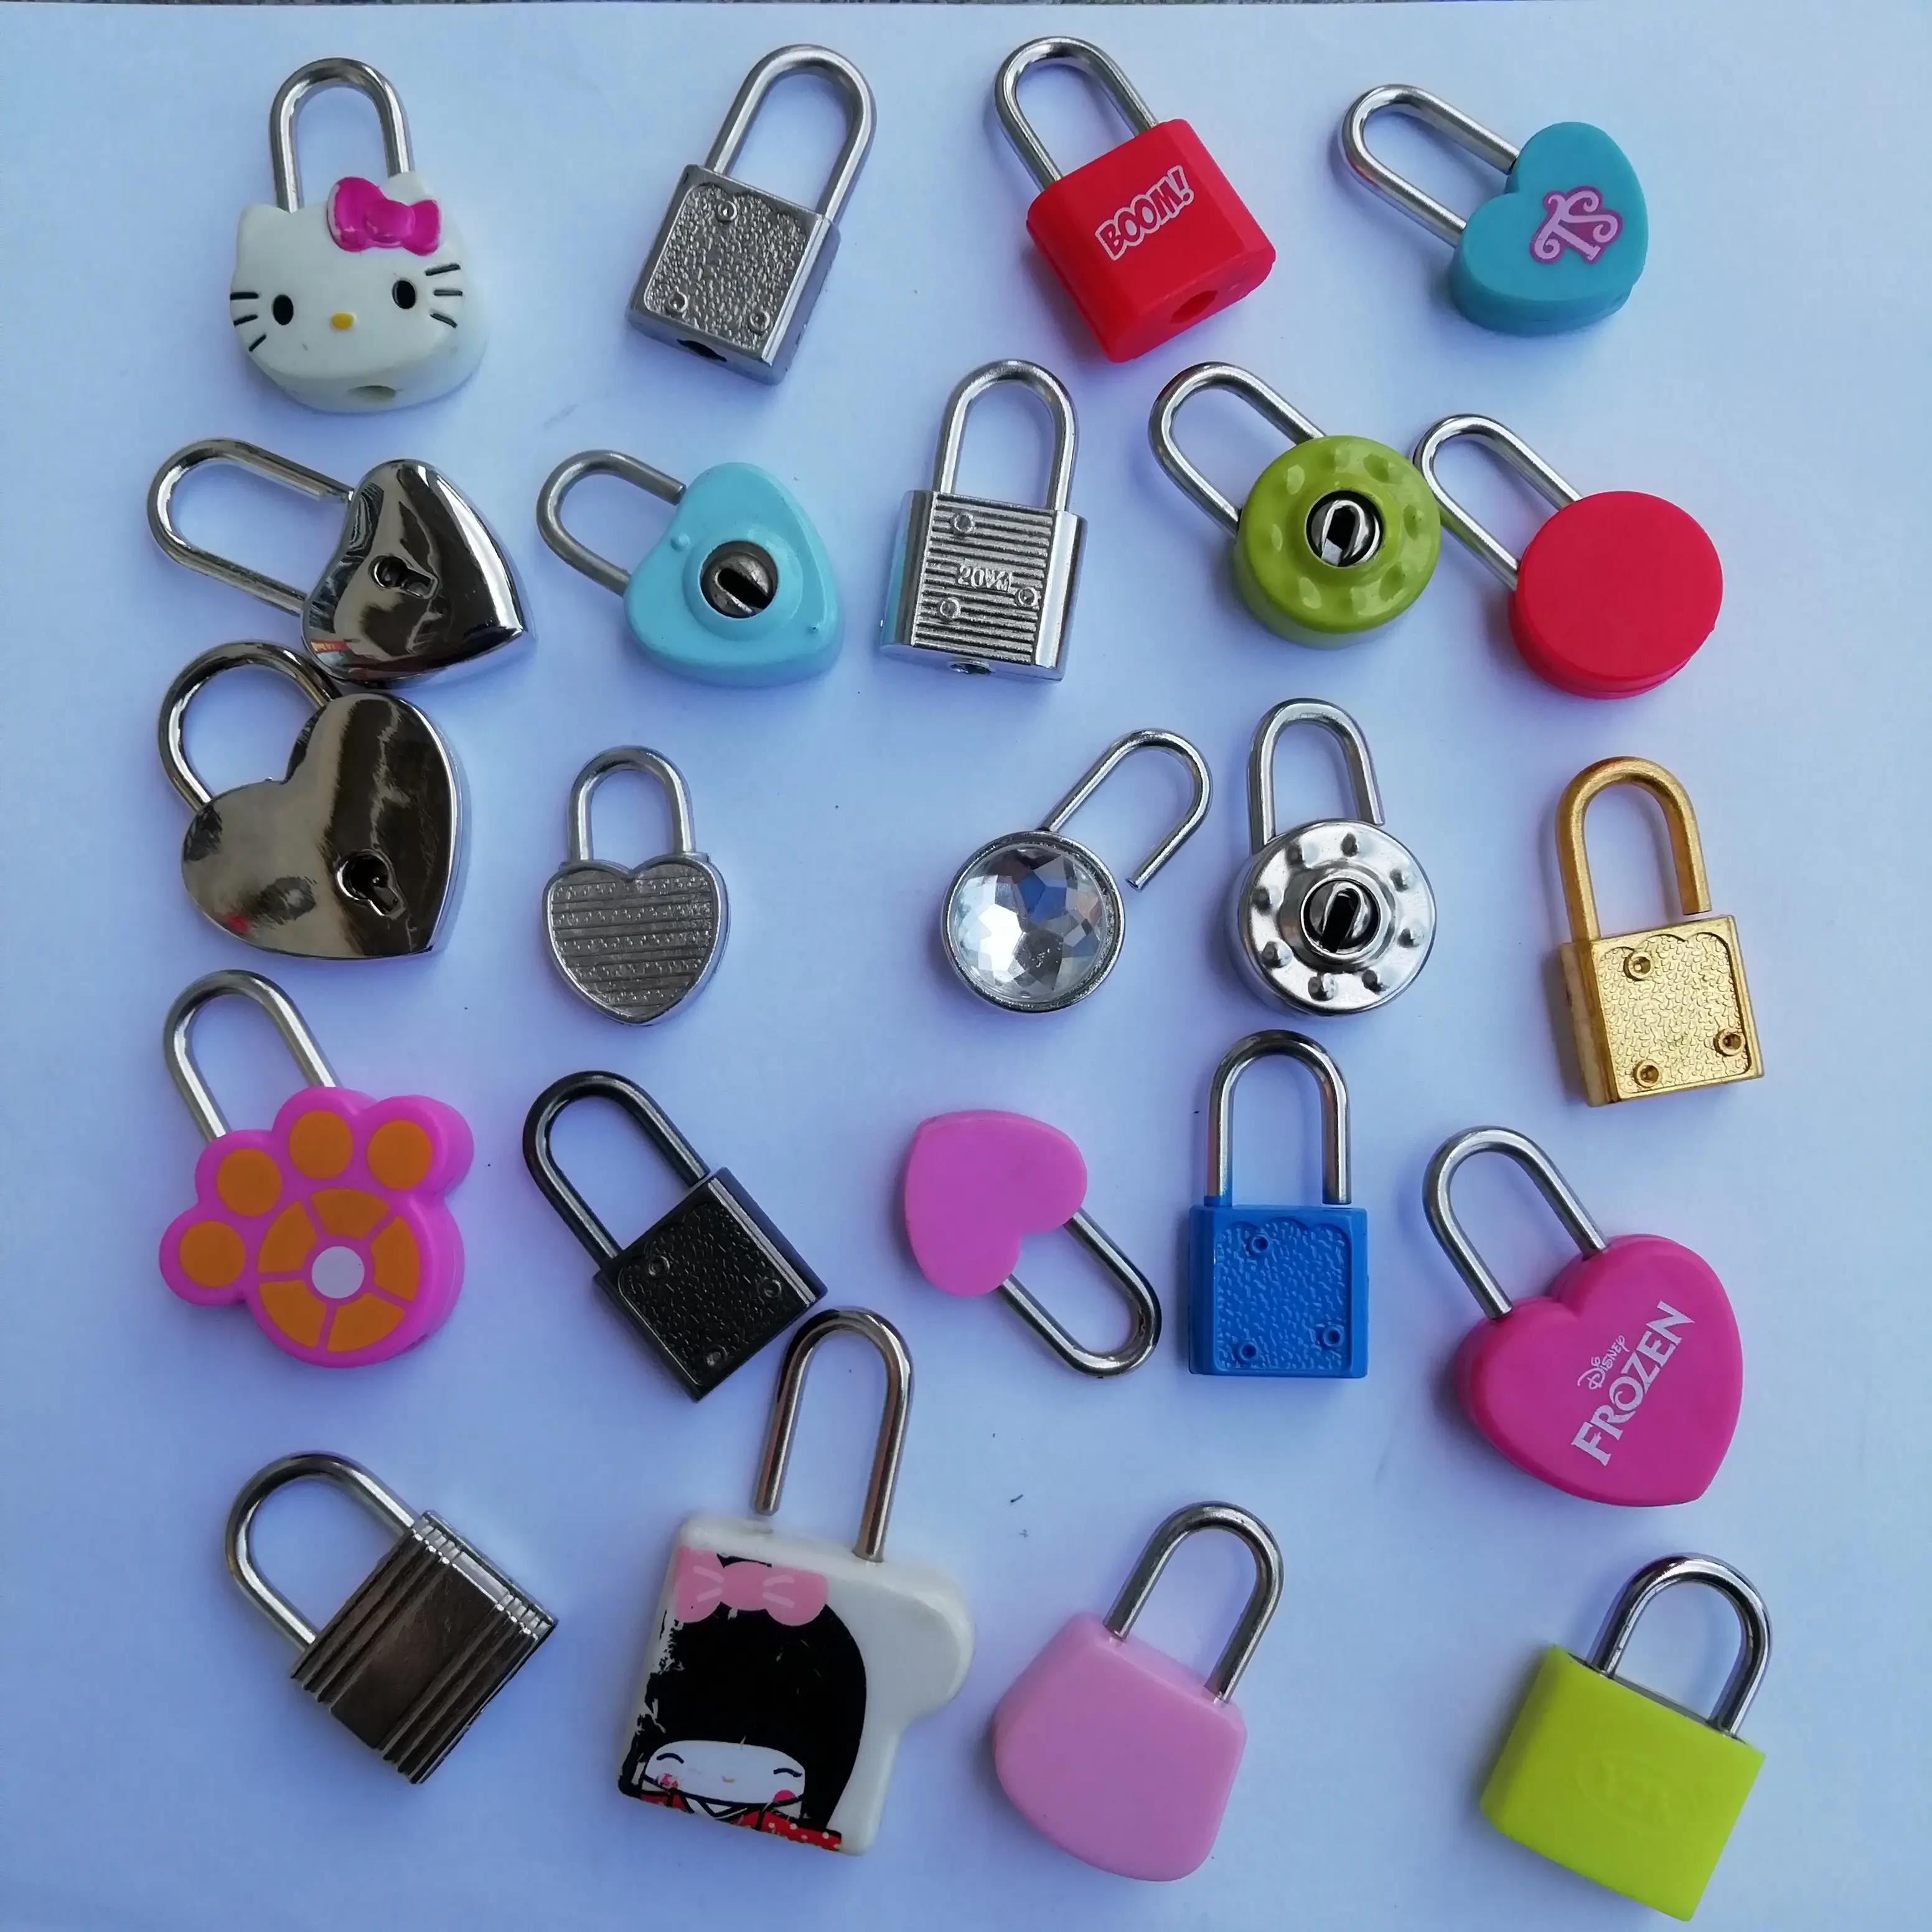 2021 klassische Mini kleine Handwerk schöne Herz schloss für Box Lock Safe Tagebuch Schlüssels chloss